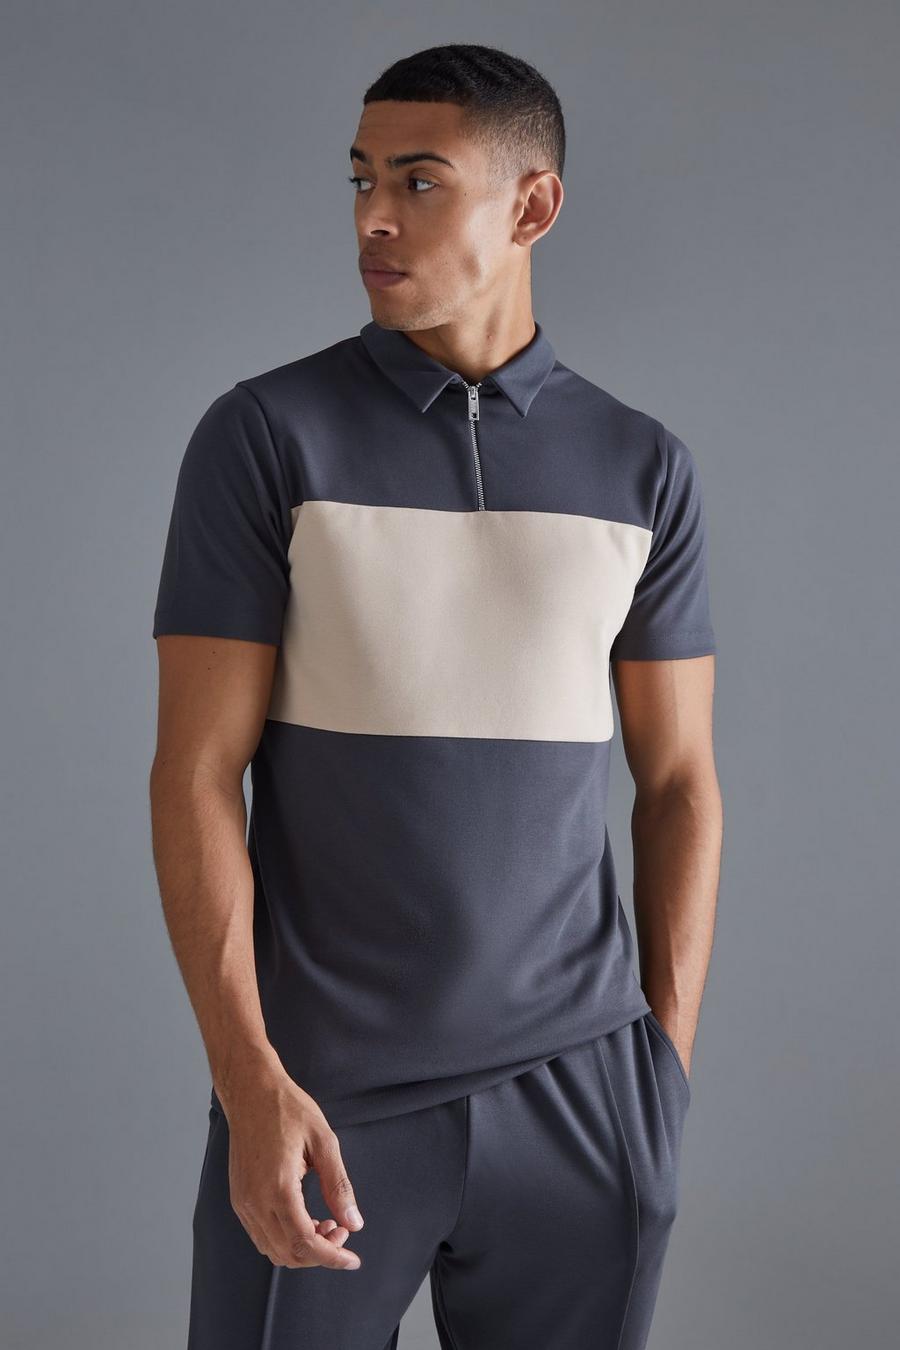 Kurzärmliges Slim-Fit Colorblock Poloshirt mit 1/4 Reißverschluss, Dark grey